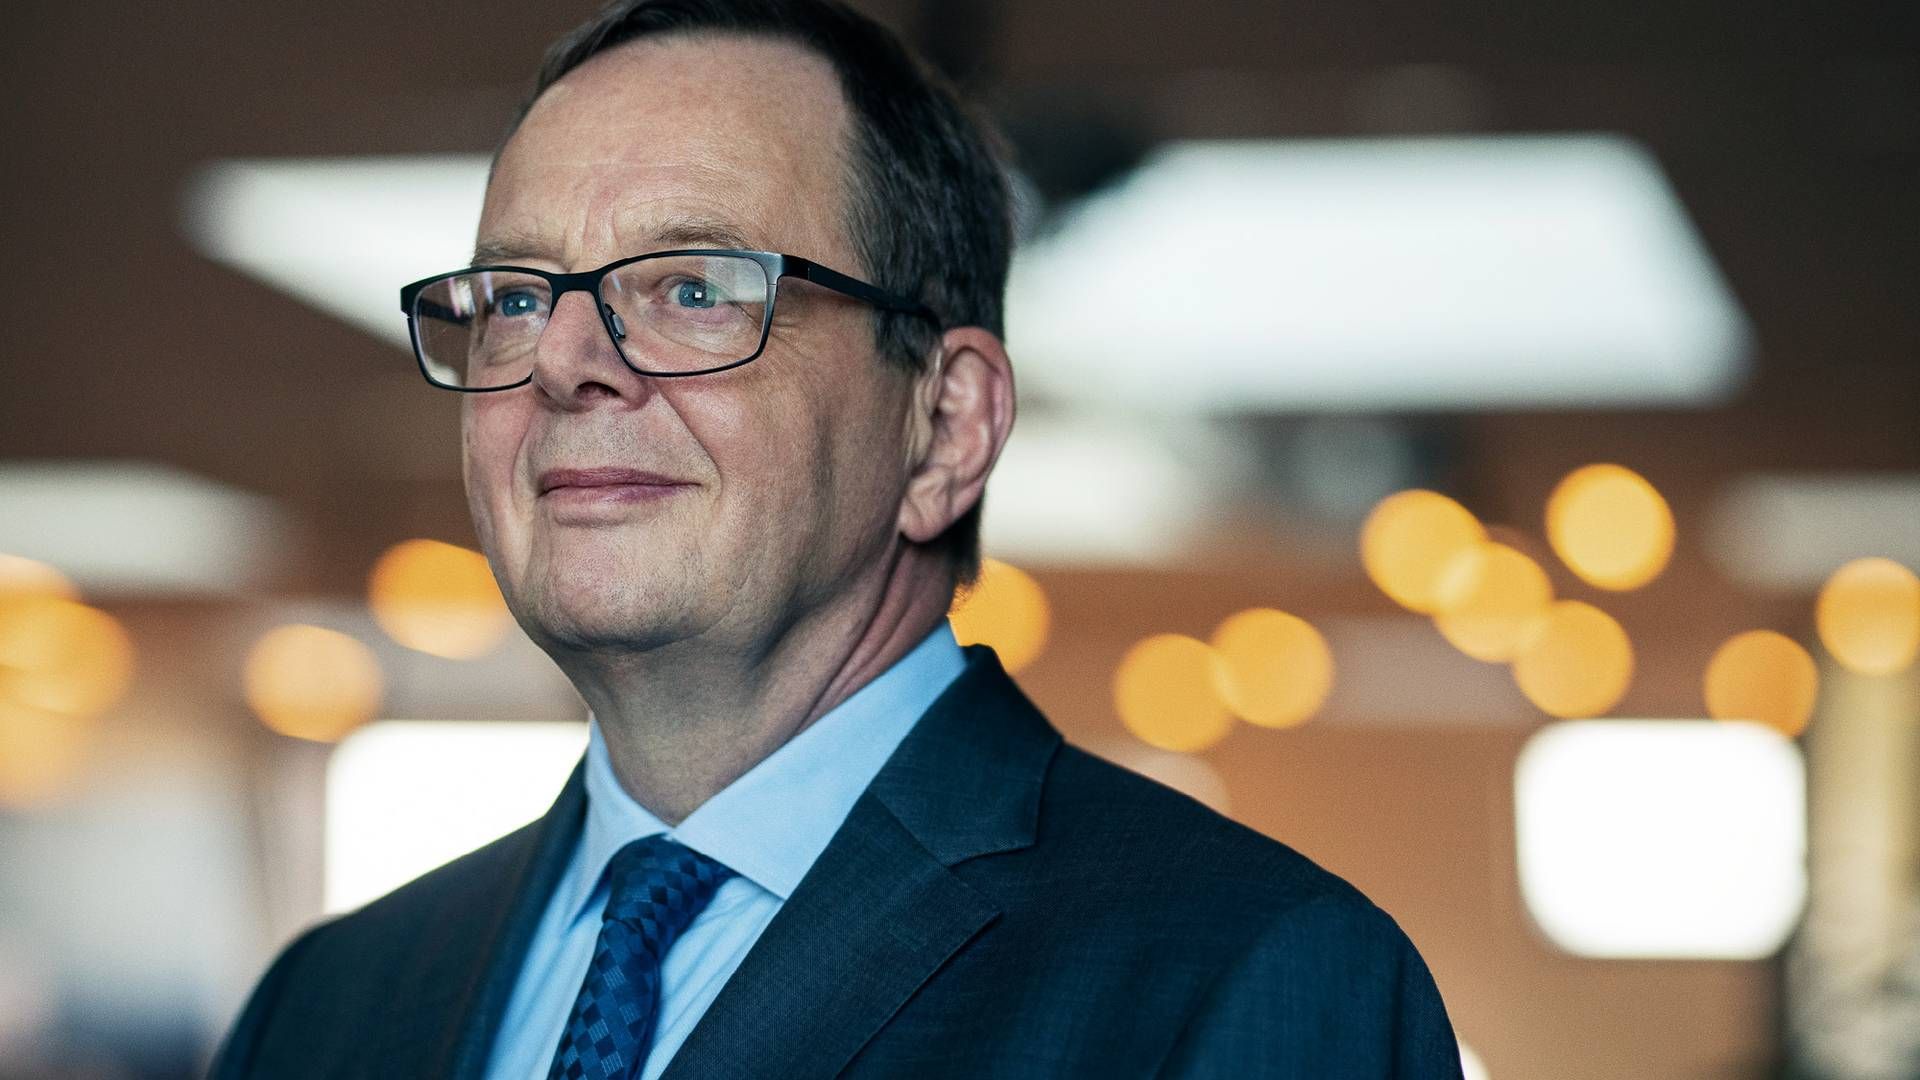 Dygtighed, ordentlighed og diskussionslyst er blandt de dyder som nationalbankdirektør Christian Kettel Thomsen sætter pris på. | Foto: Pr